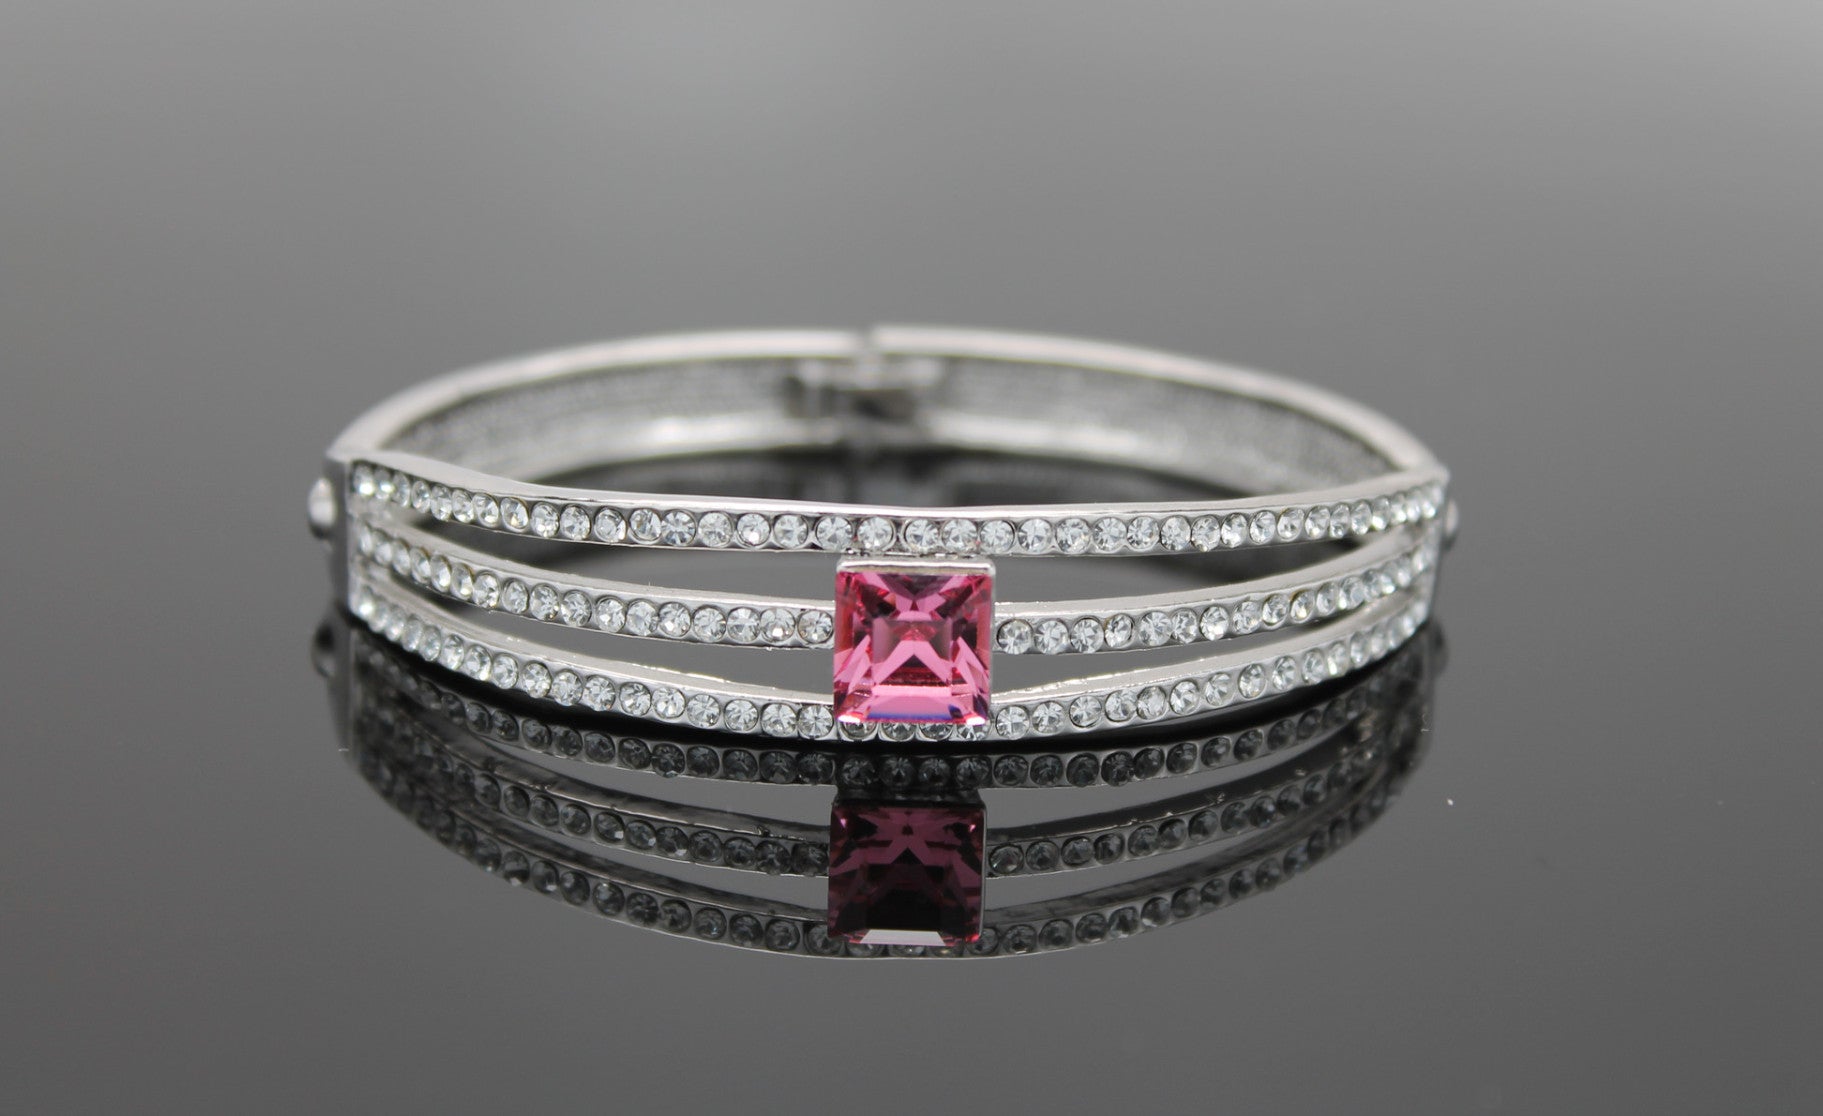 Pink Crystal Bracelet